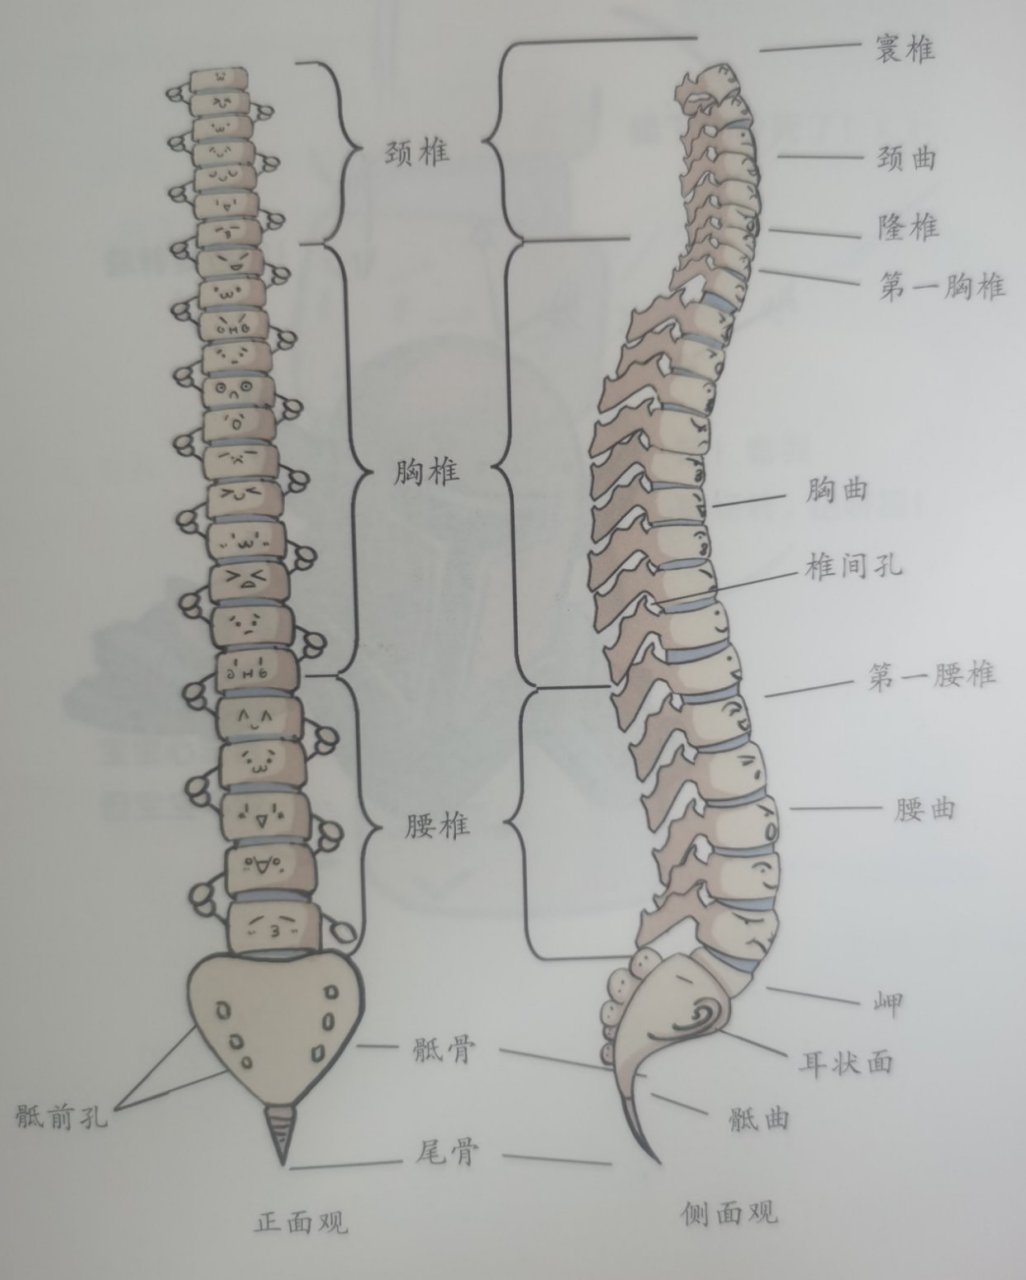 正常脊柱长什么样子 从正面看,脊柱呈一条直线,从侧面看,脊柱有4个